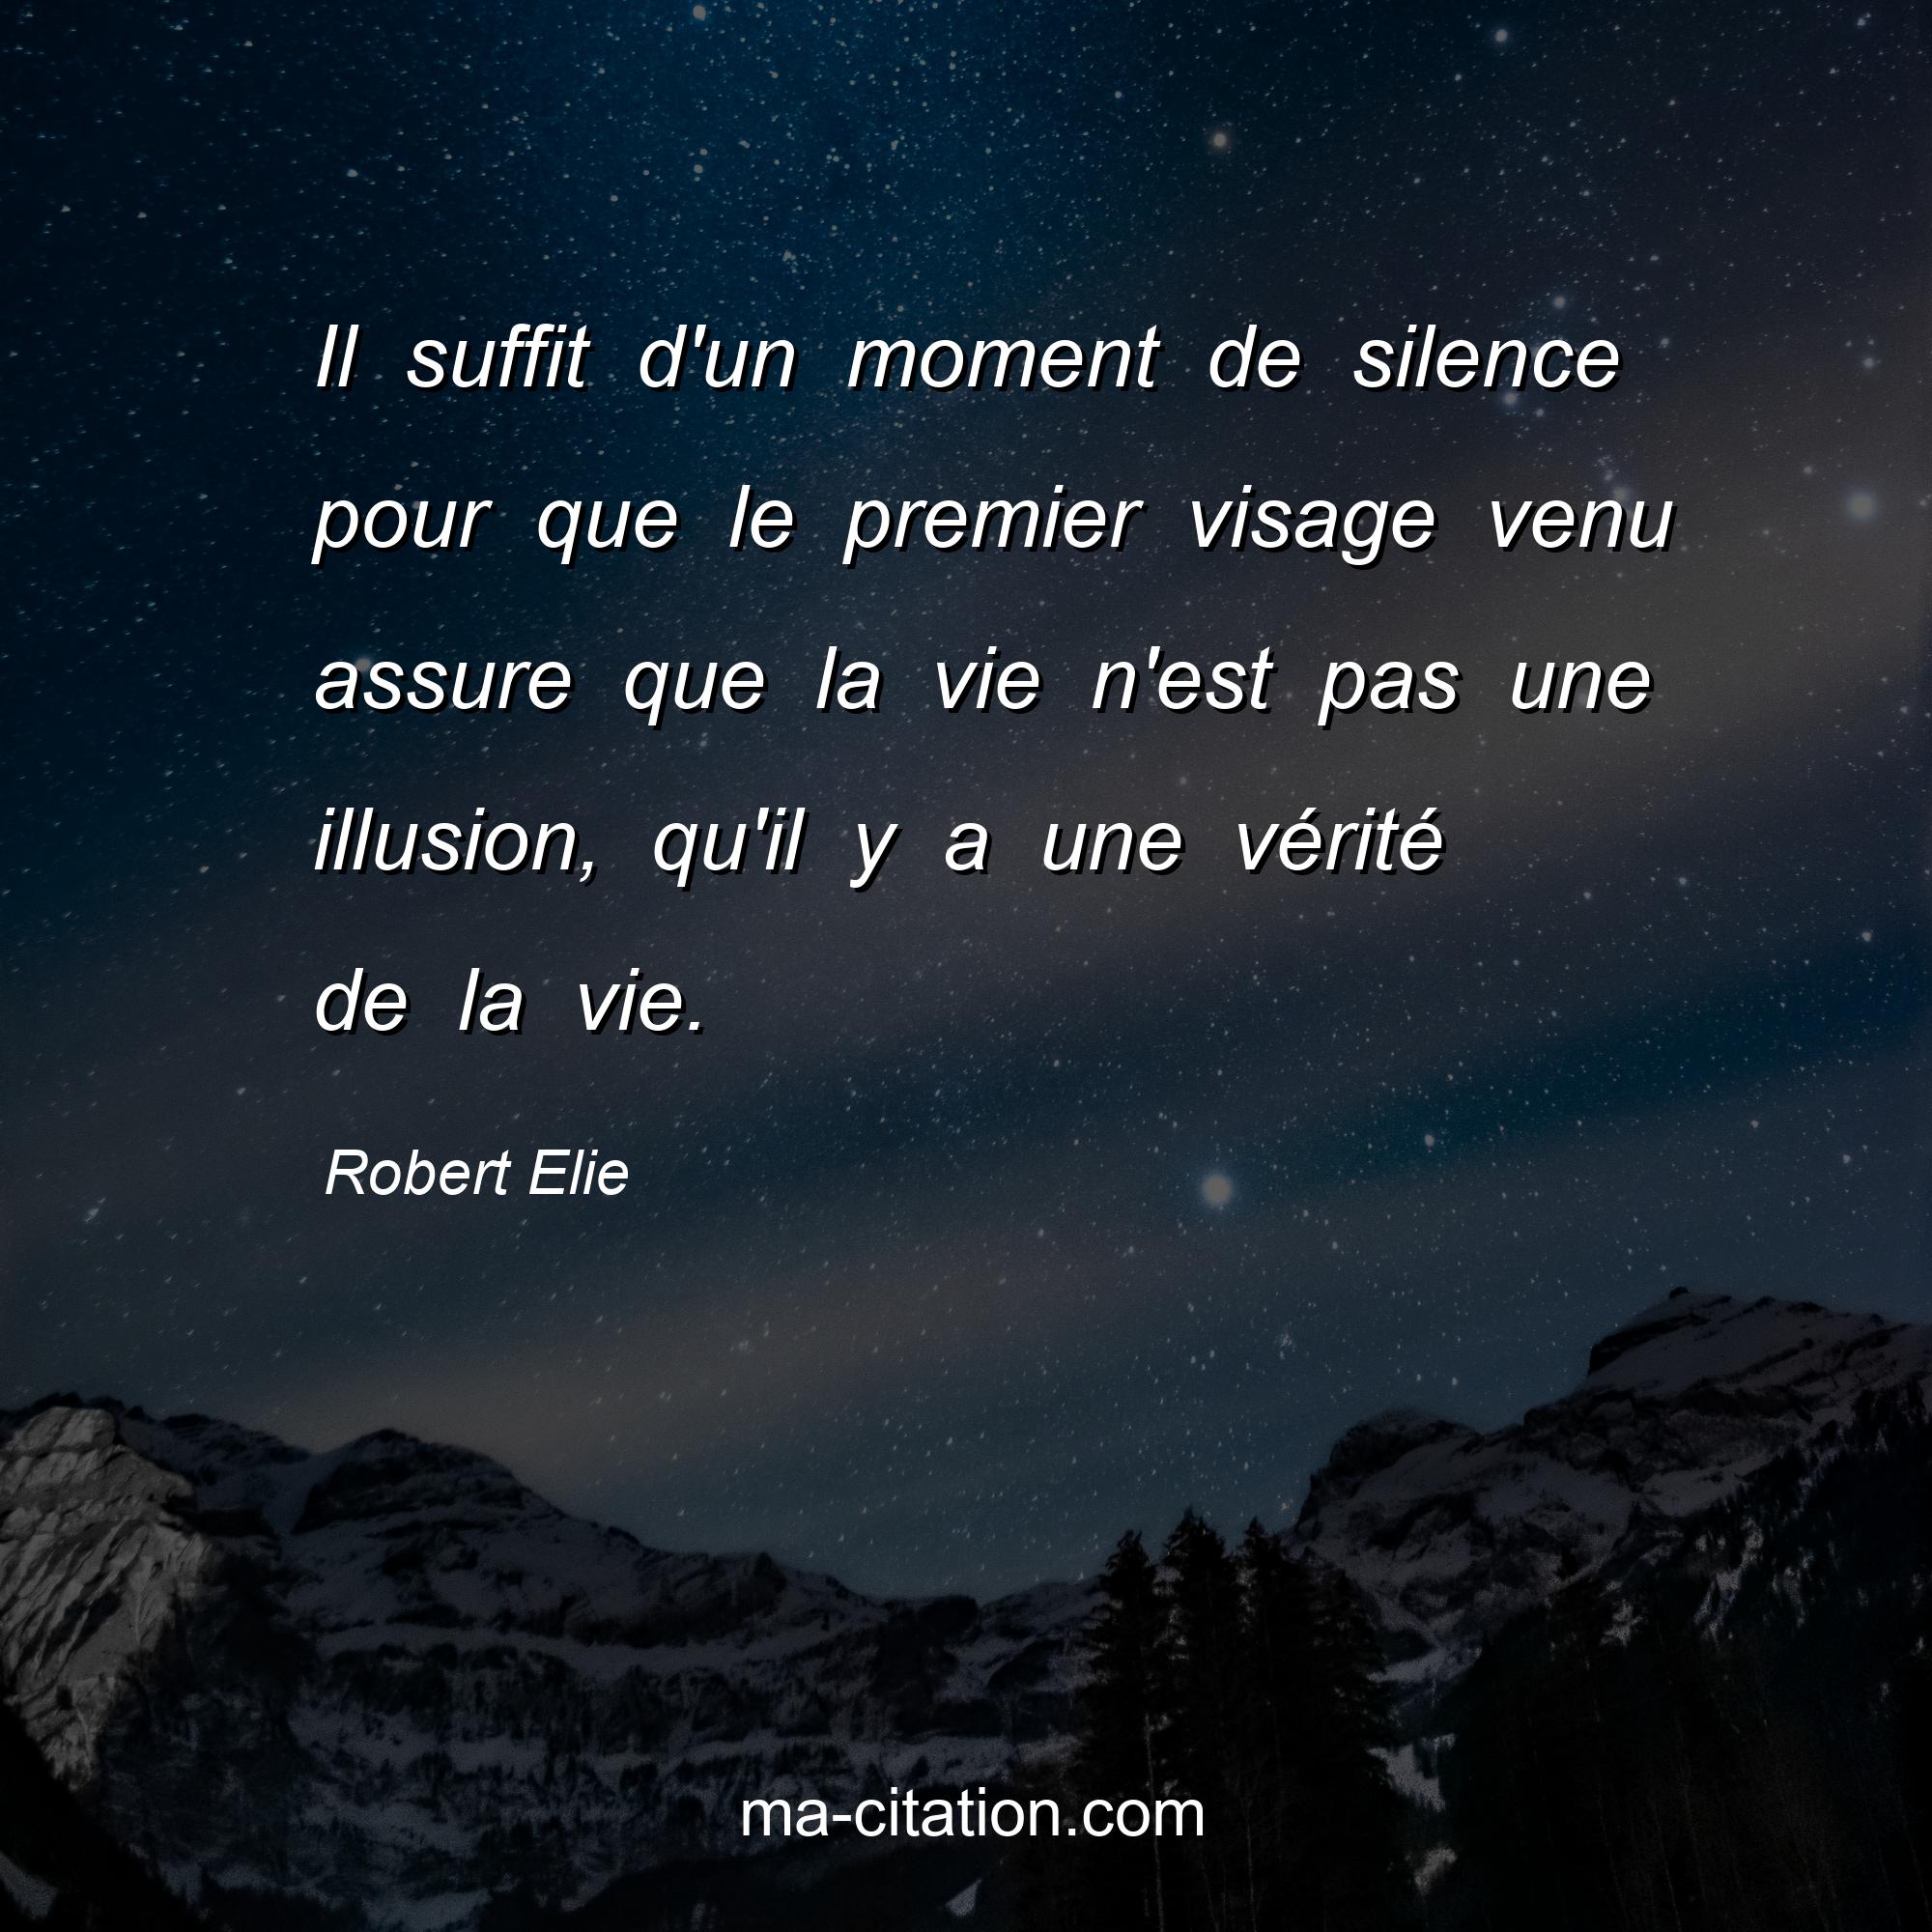 Robert Elie : Il suffit d'un moment de silence pour que le premier visage venu assure que la vie n'est pas une illusion, qu'il y a une vérité de la vie.